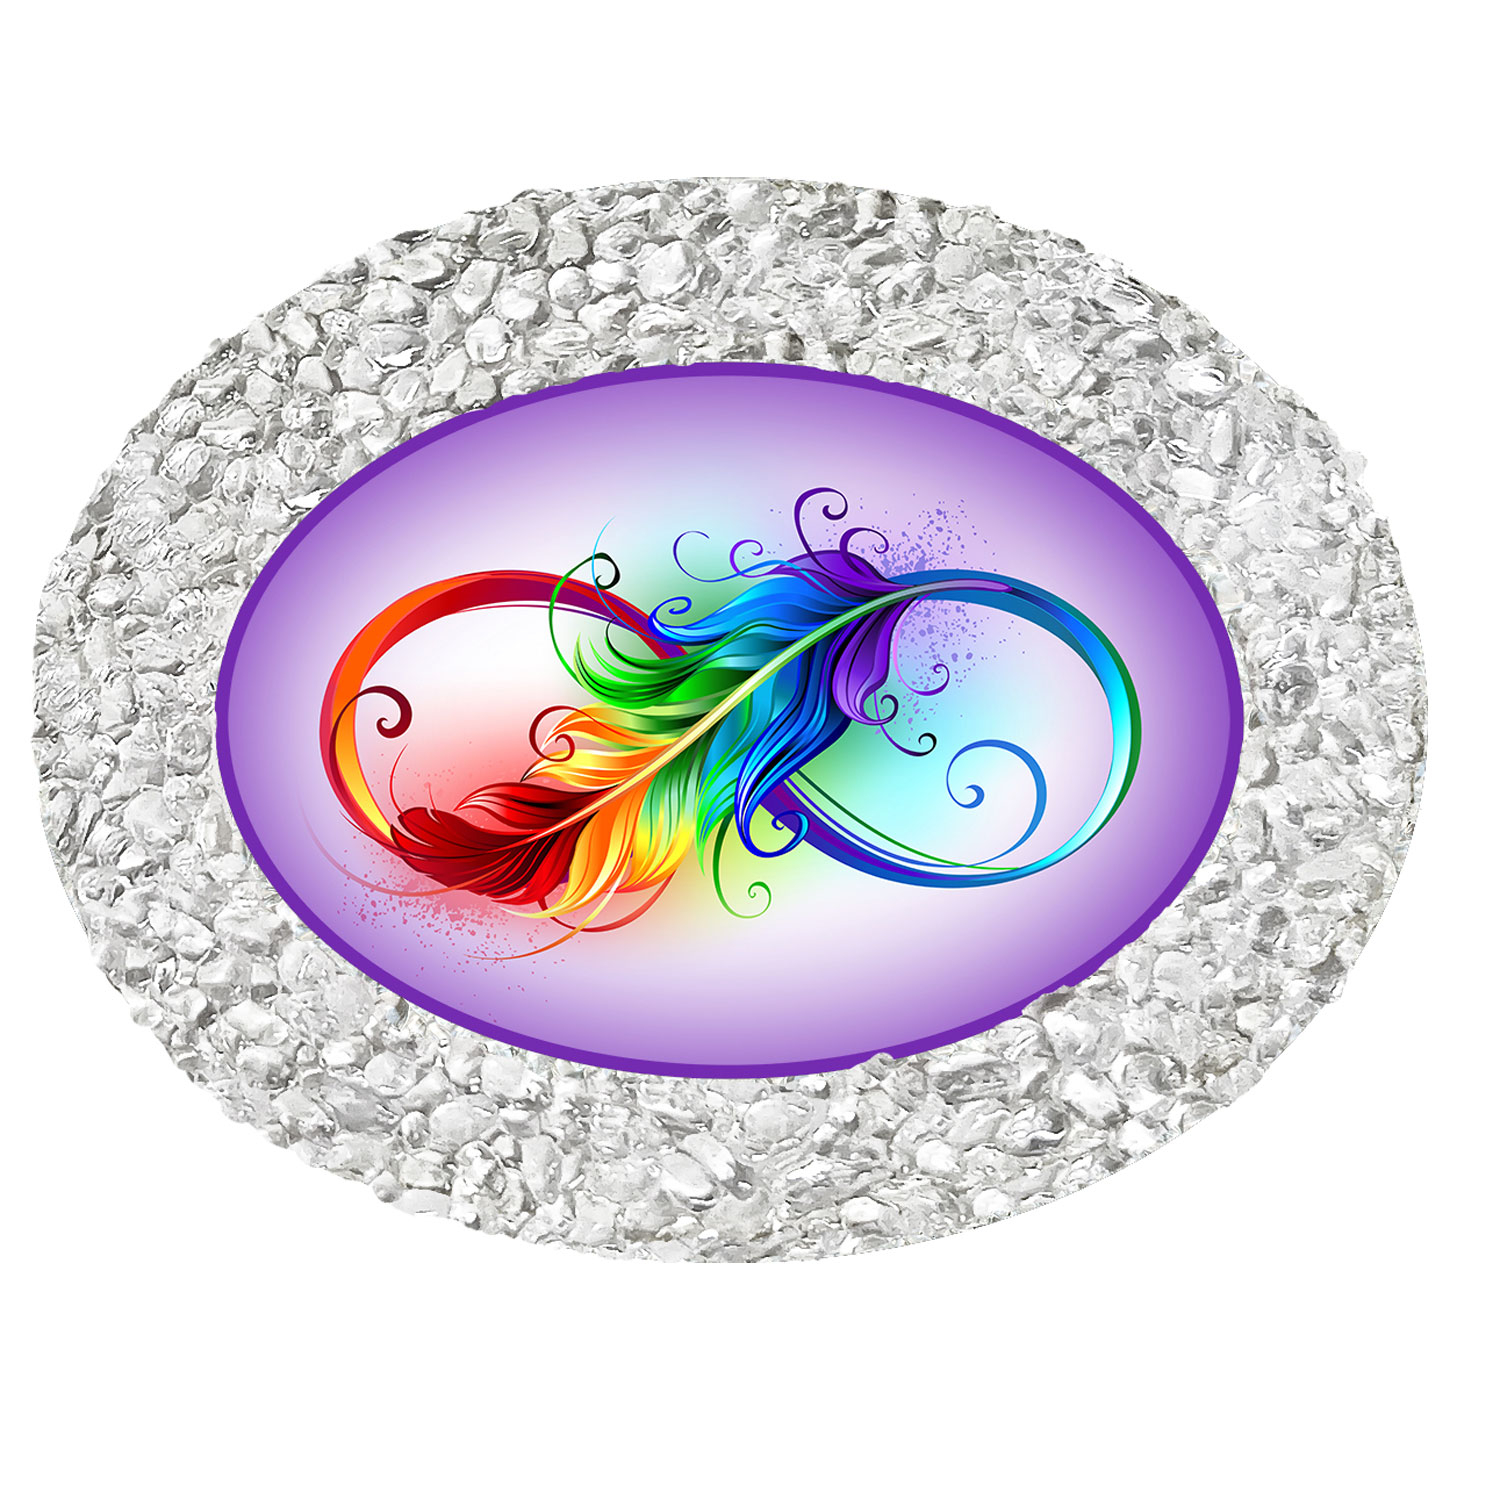 Bergkristall-Energiemagnet „Unendlichkeit“, Produktbild 1